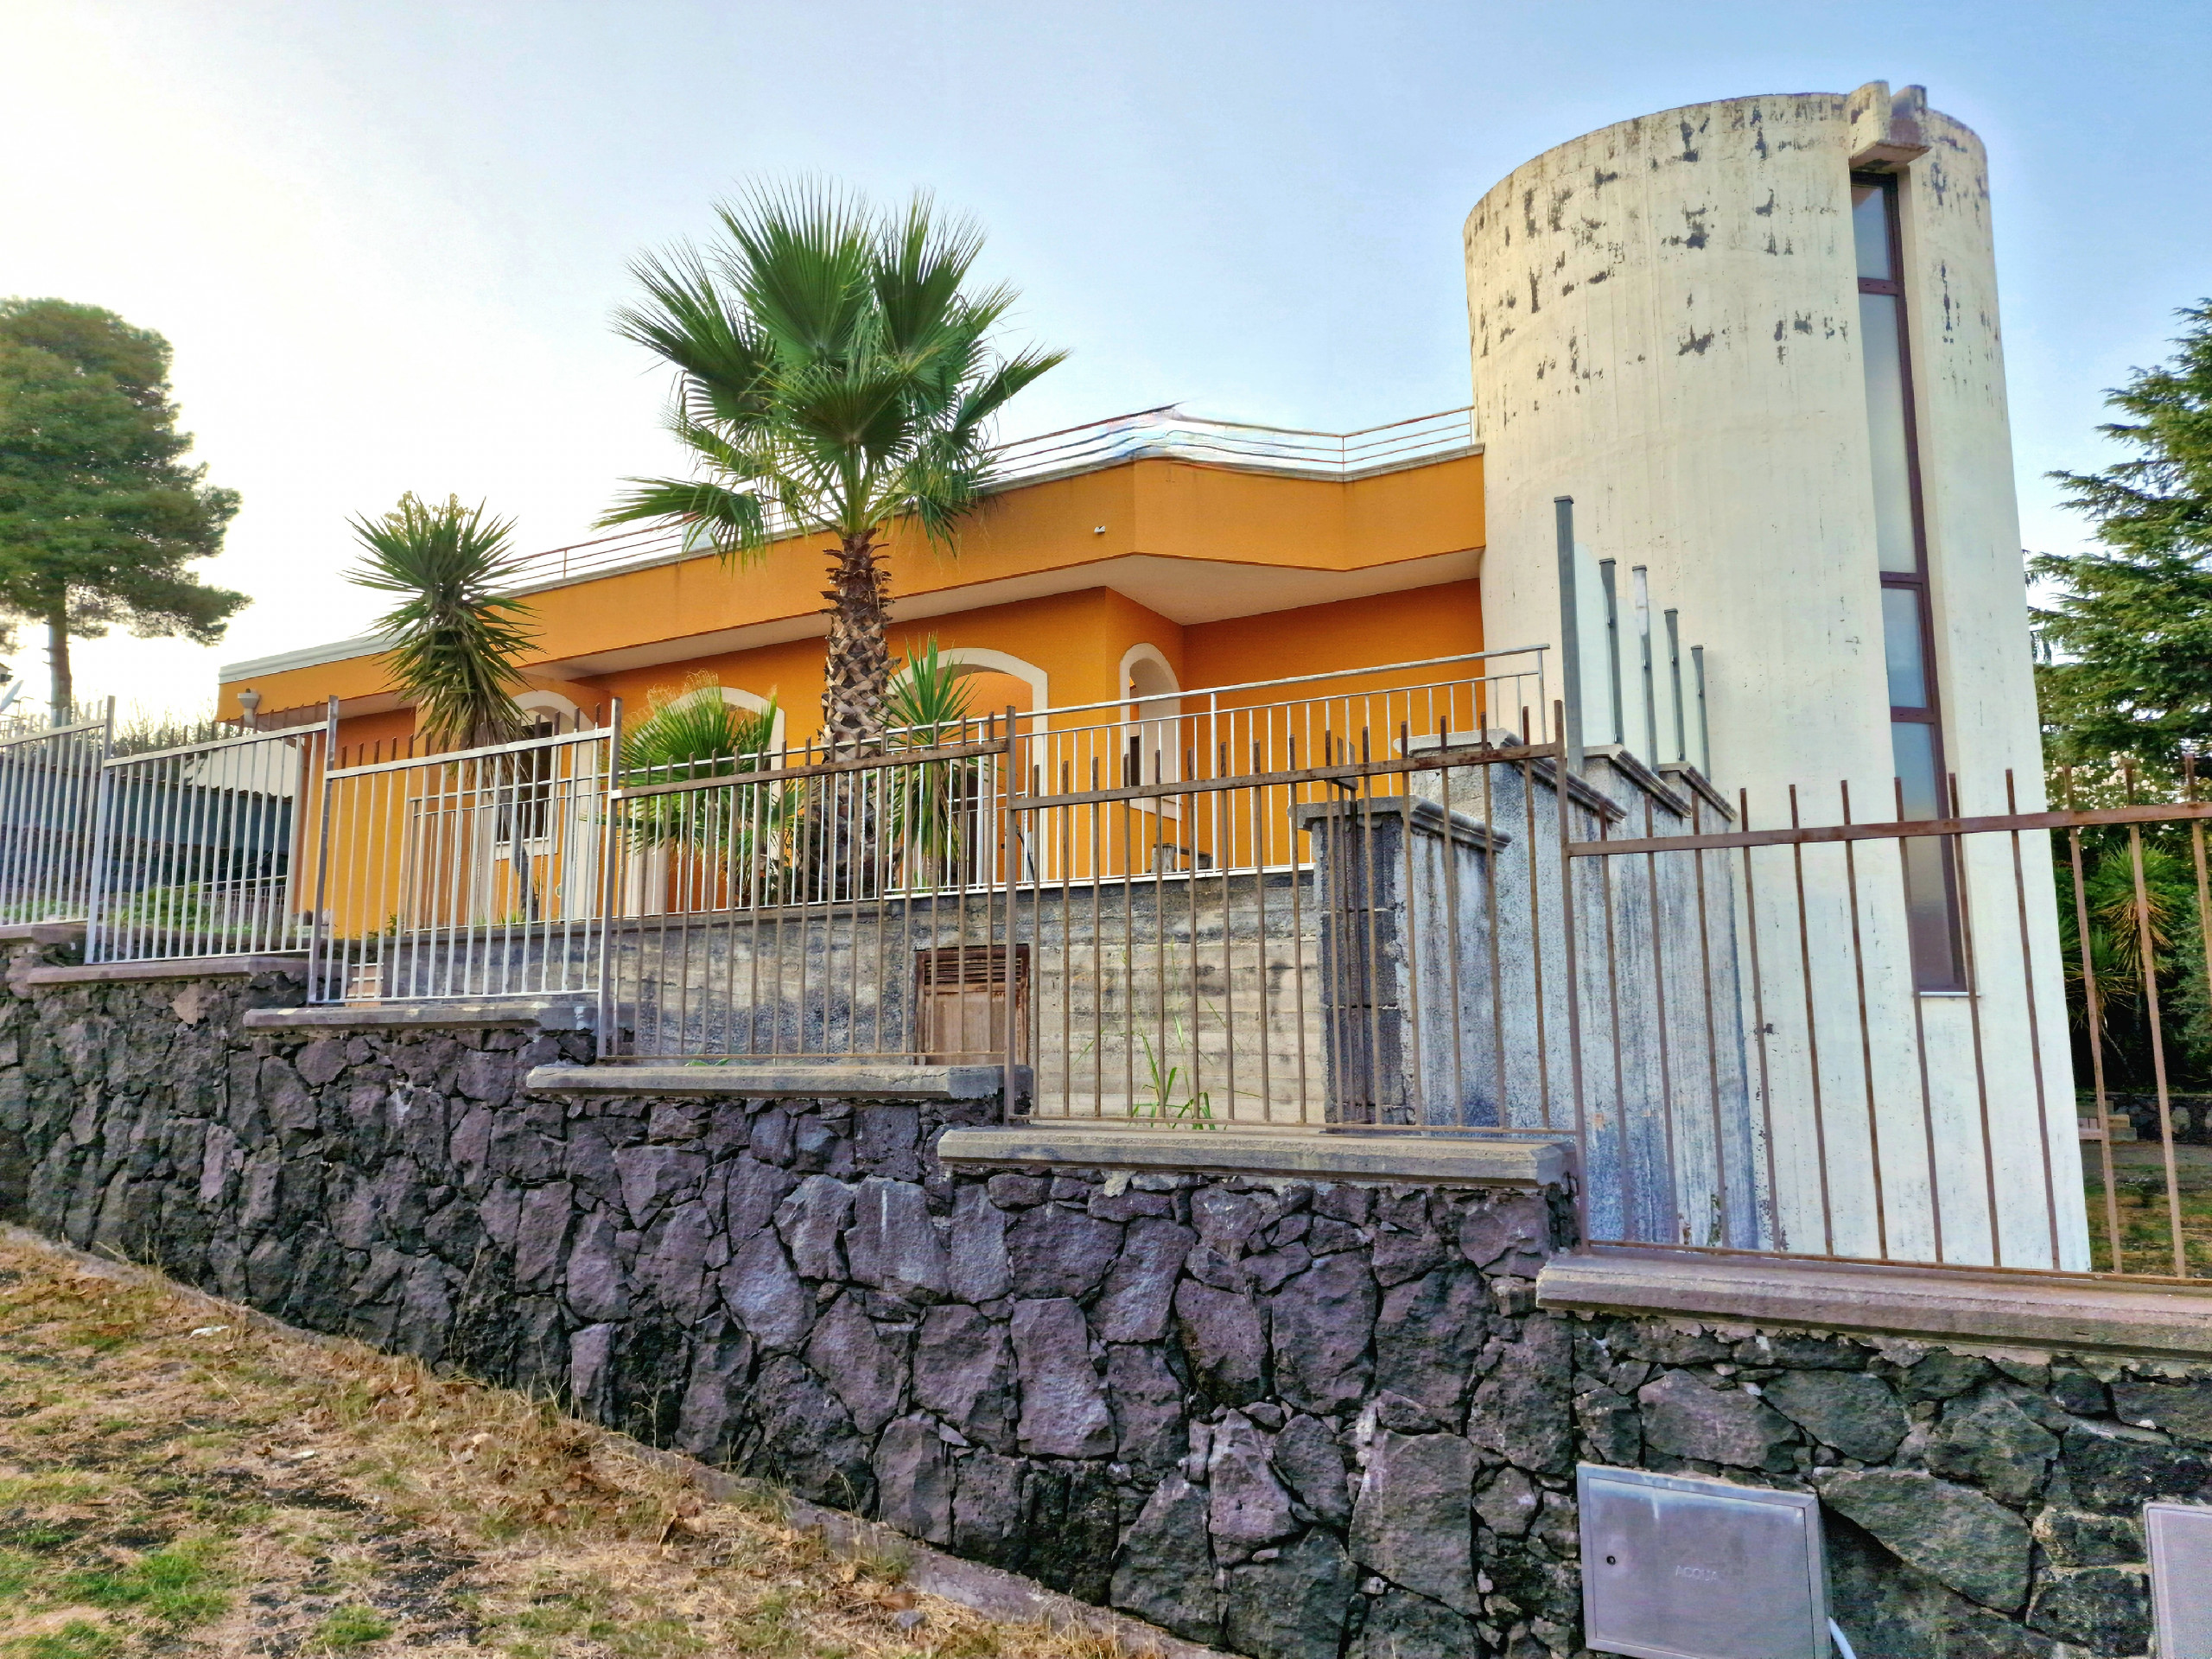 Villa in vendita Catania